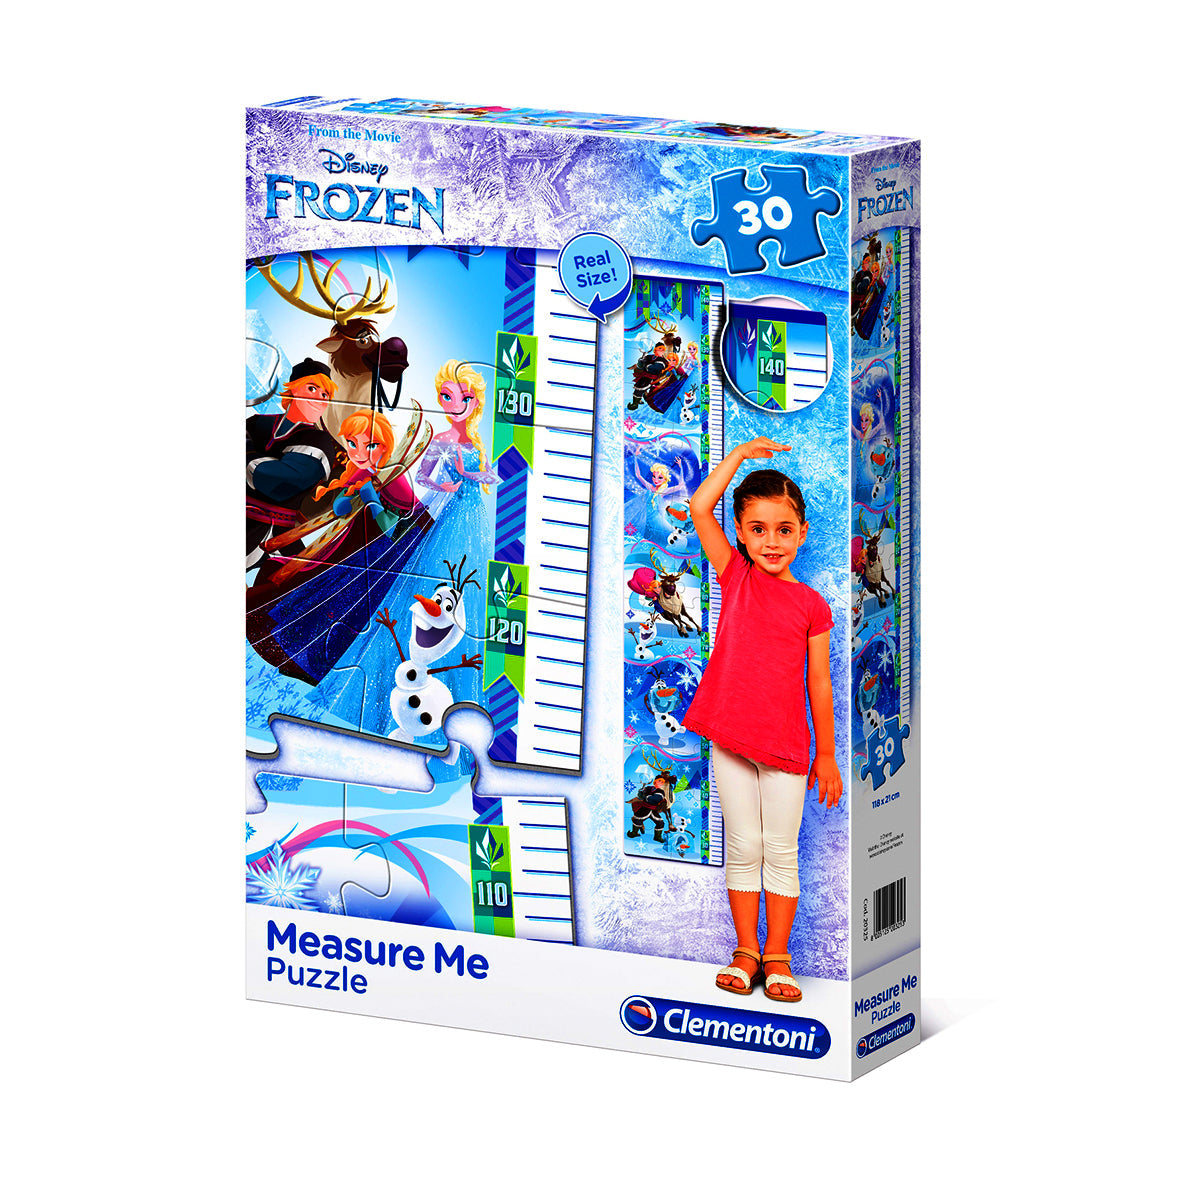 Clementoni - Disney Frozen - 30 pcs - Measure Me Puzzle